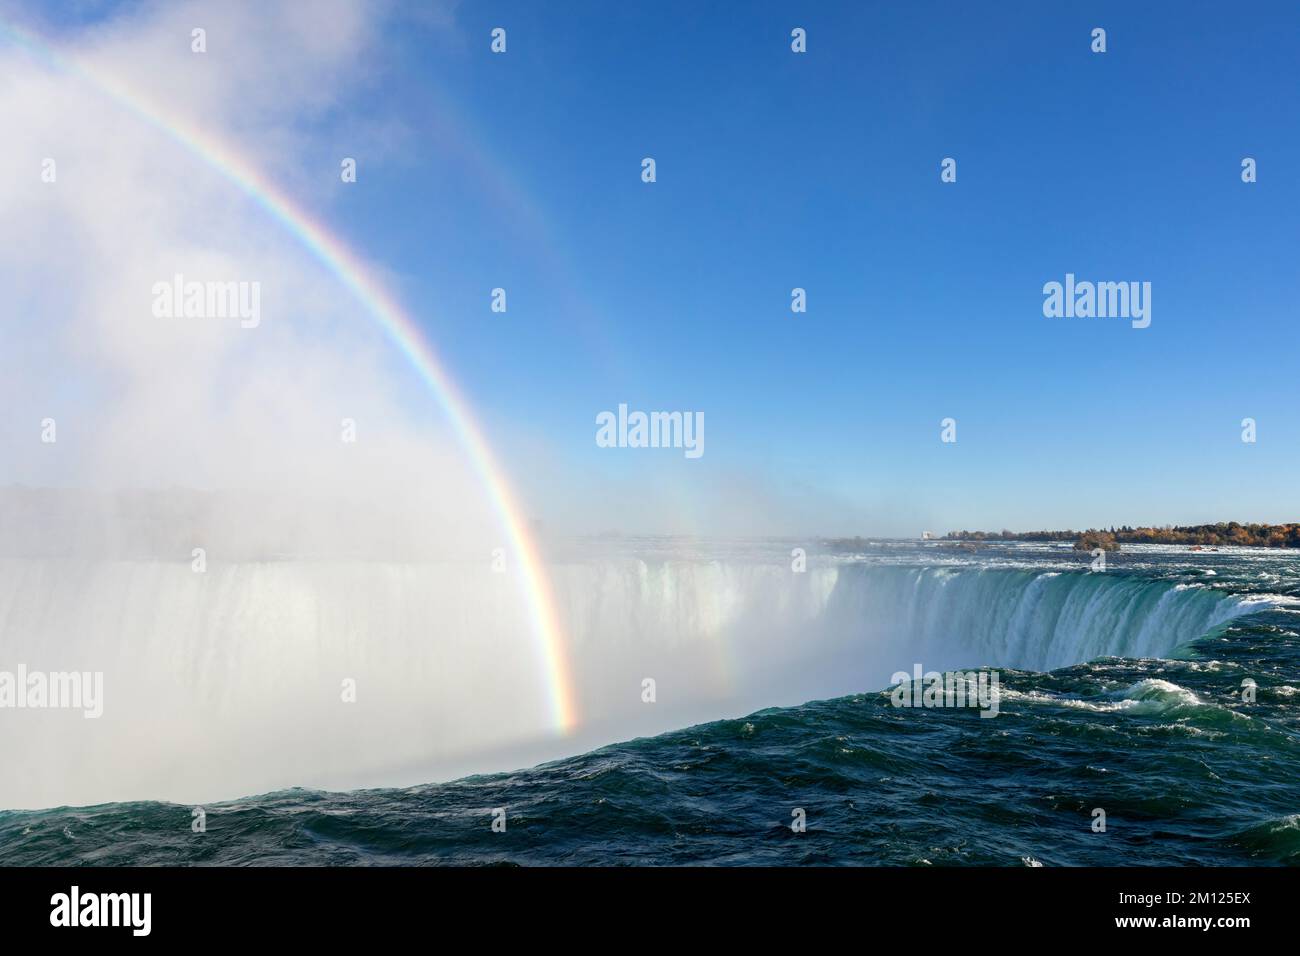 Canada, Ontario, Niagara Falls, The Horseshe Falls en plein jour avec un arc-en-ciel Banque D'Images